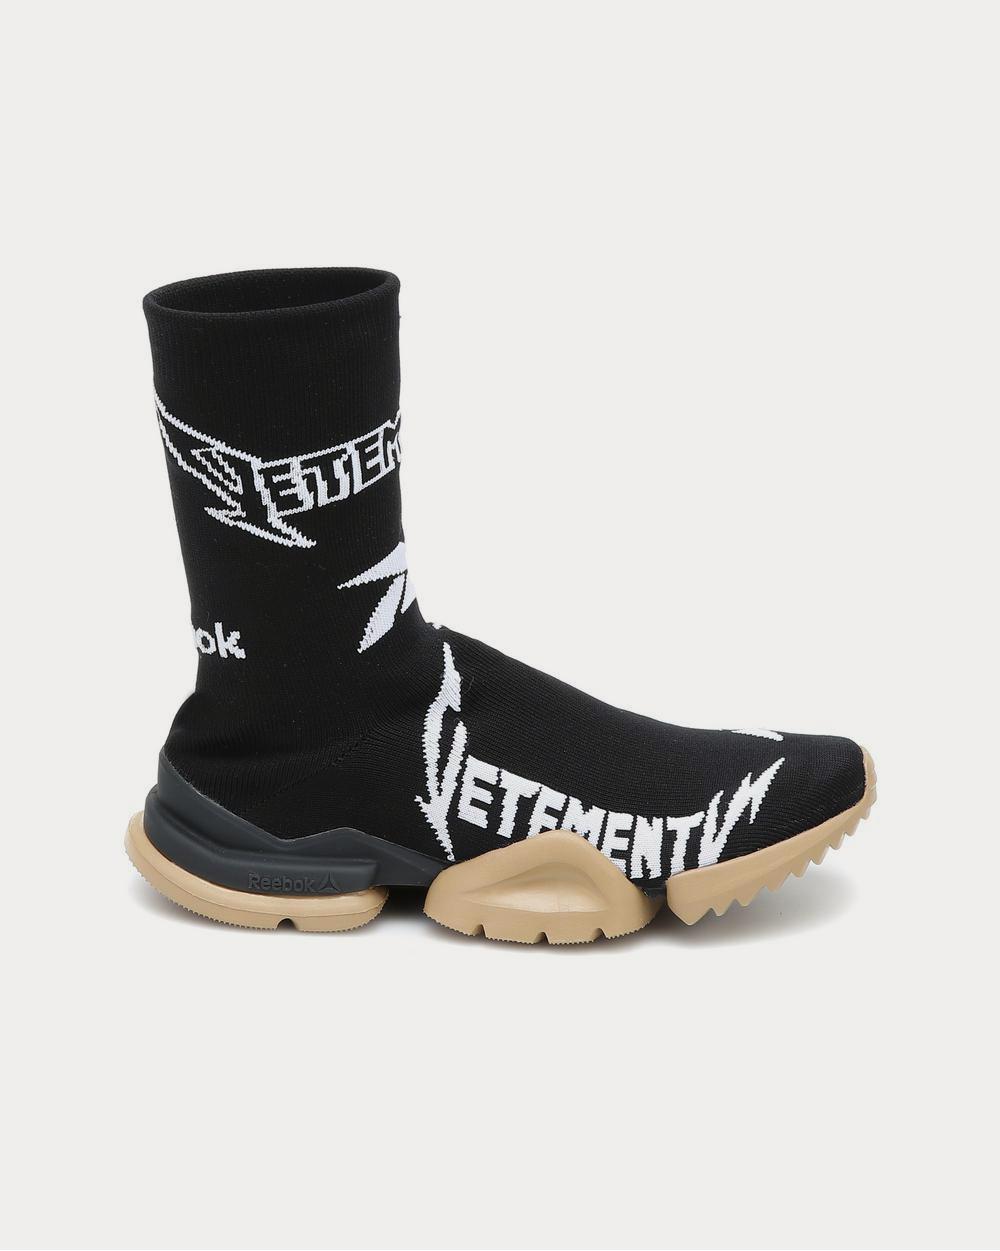 Metal Sock Runner Black high top Sneakers